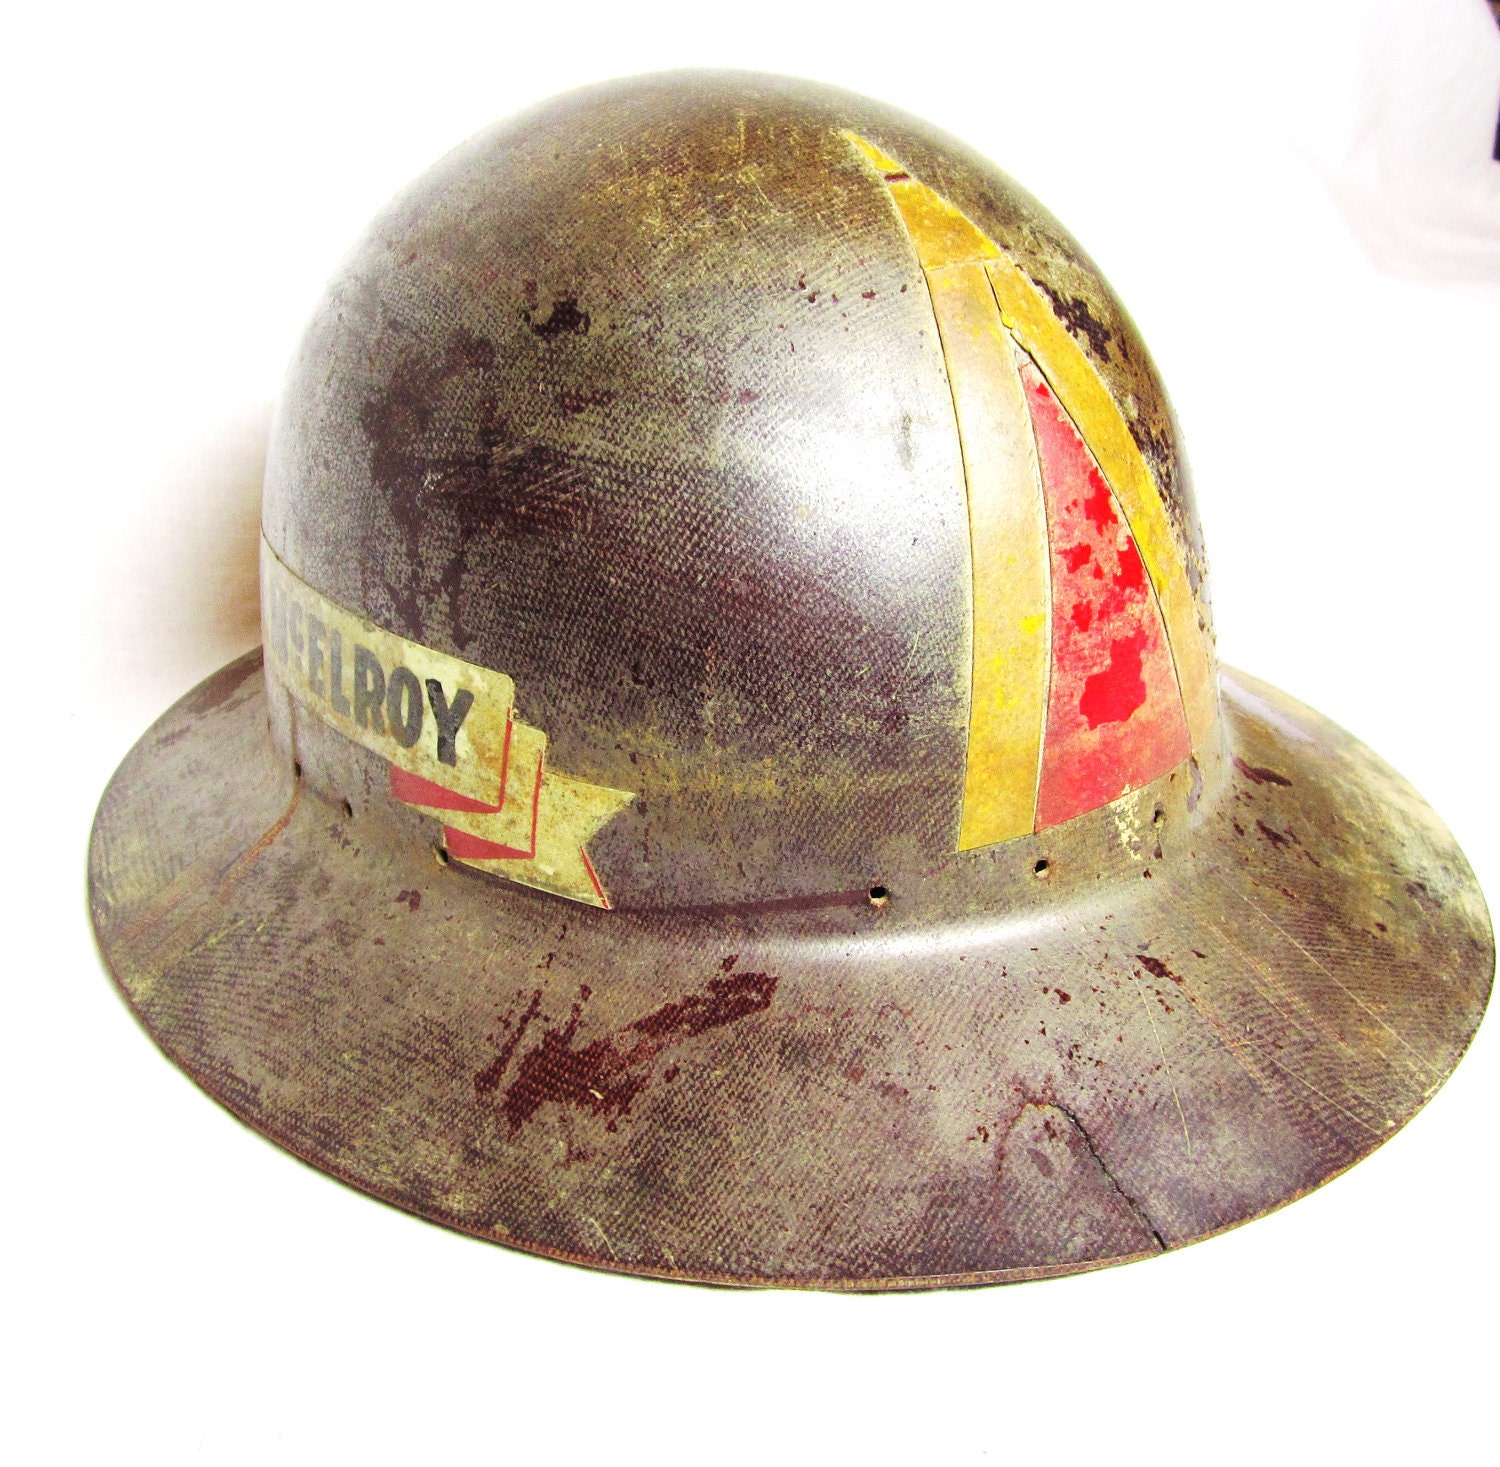 miners hard hat